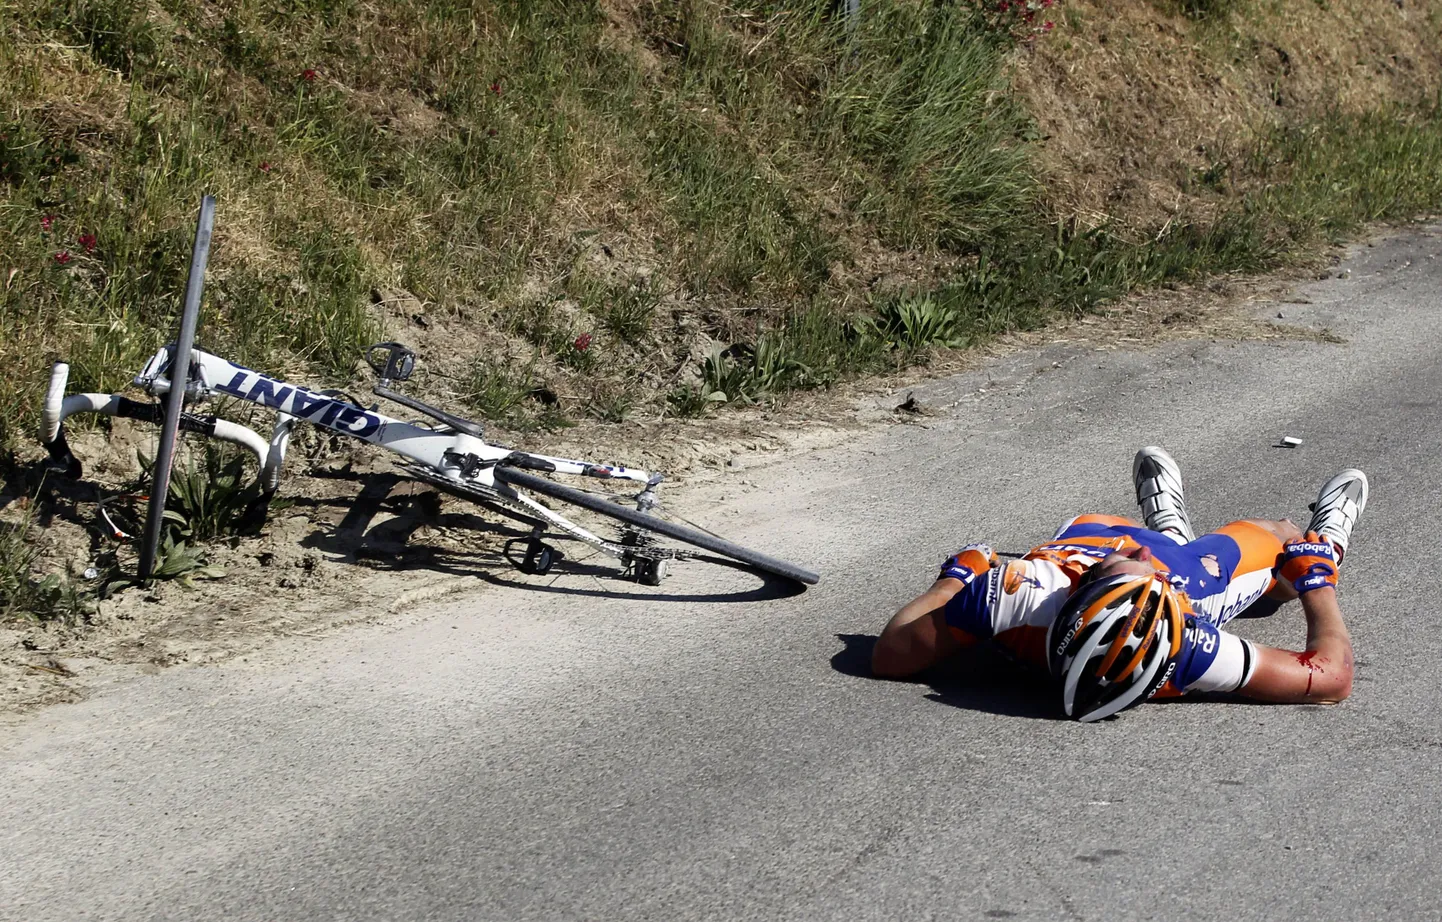 Hollandi jalgrattur Tom Jelte Slagter pärast kukkumist maas lamamas.